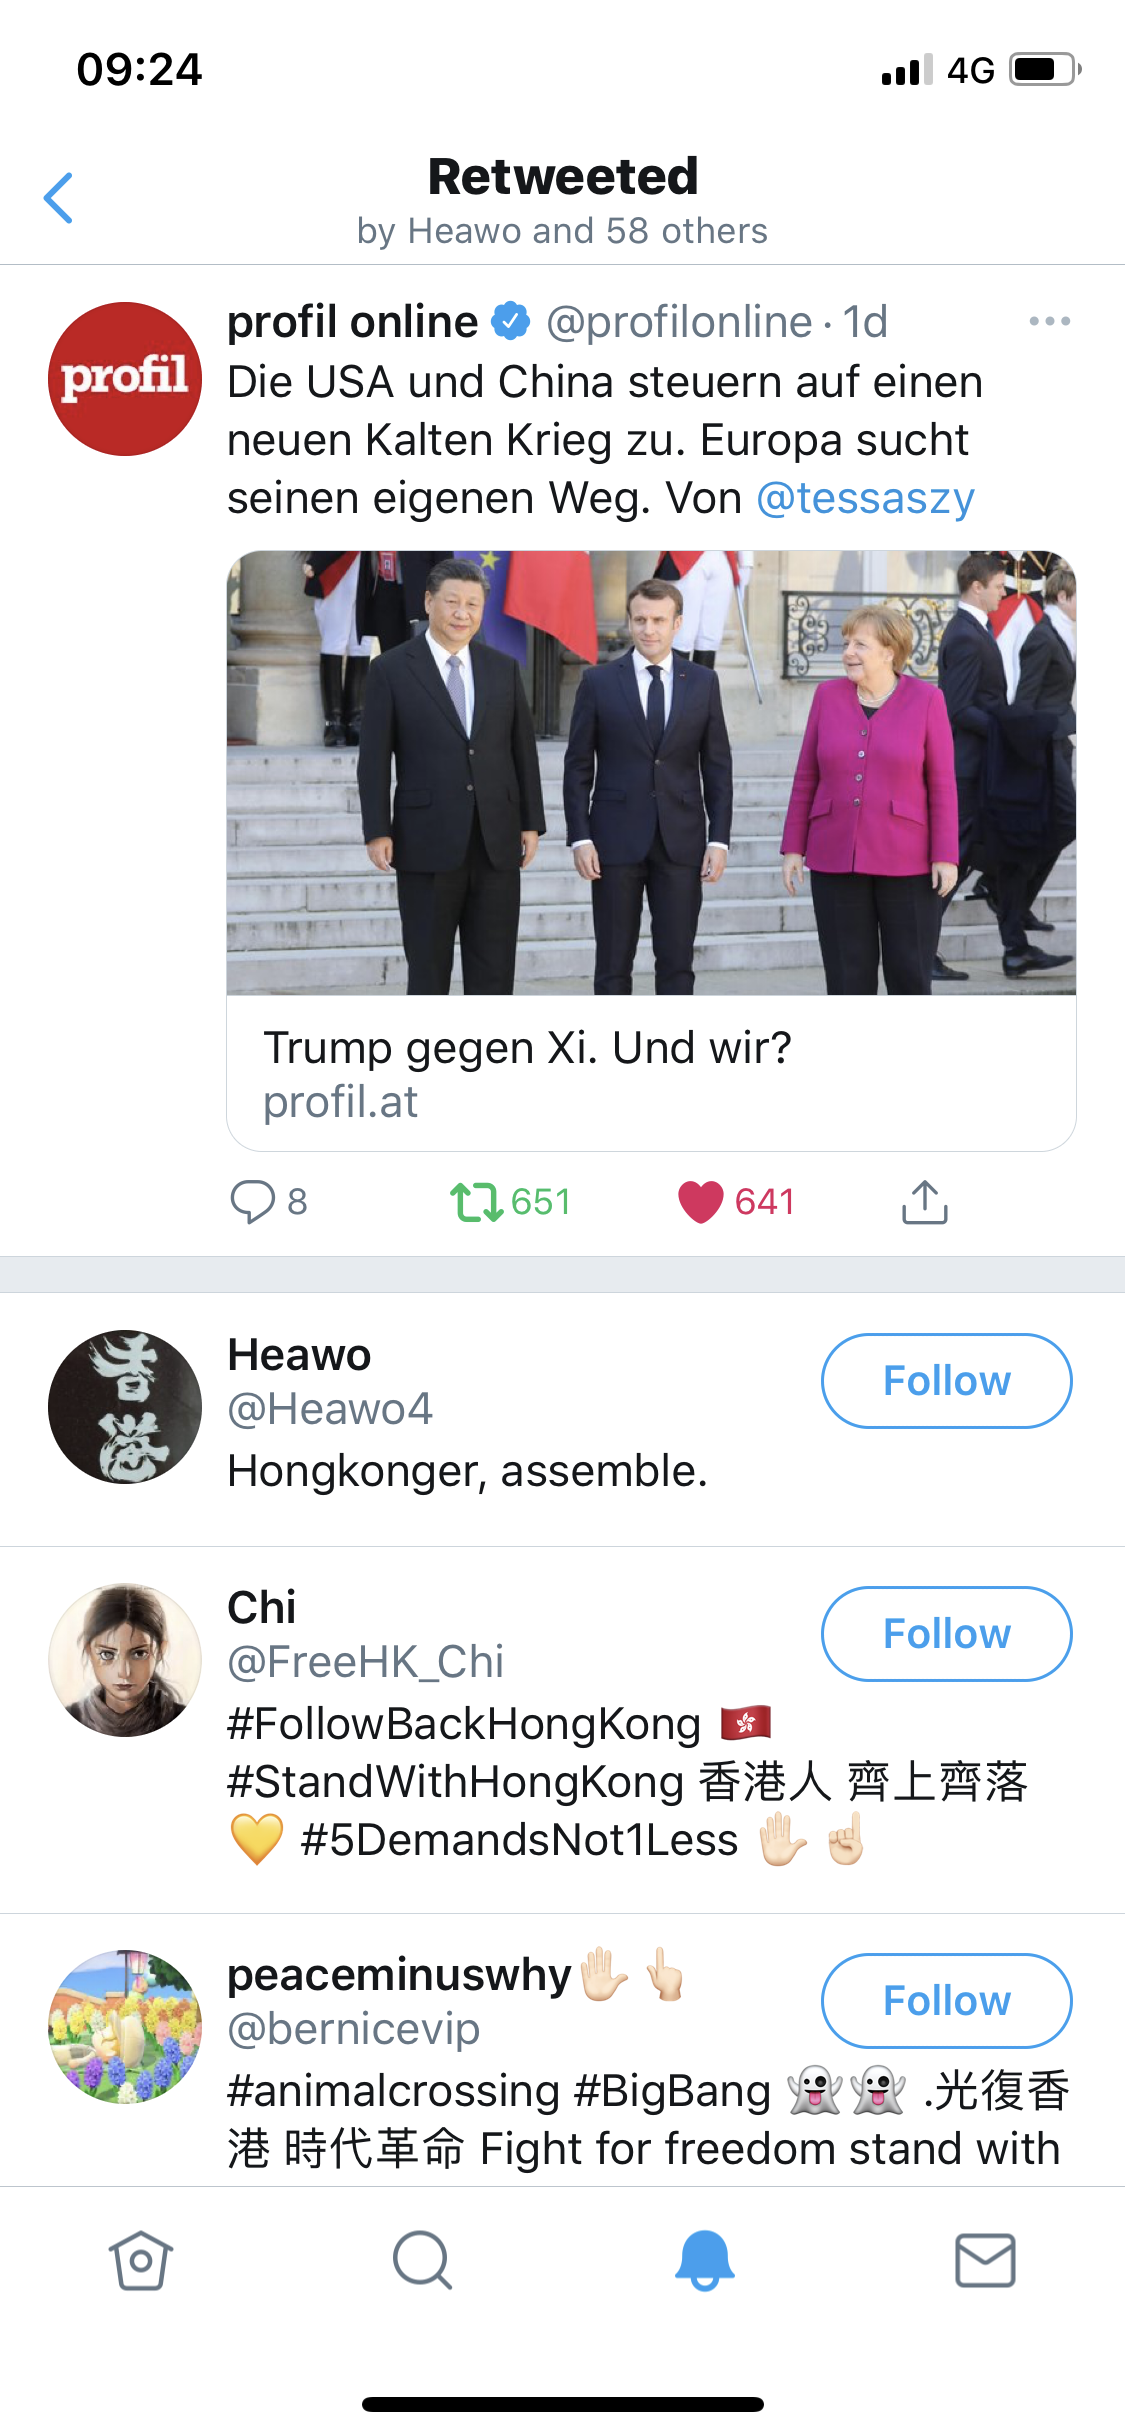 Trump gegen Xi. Und wir?